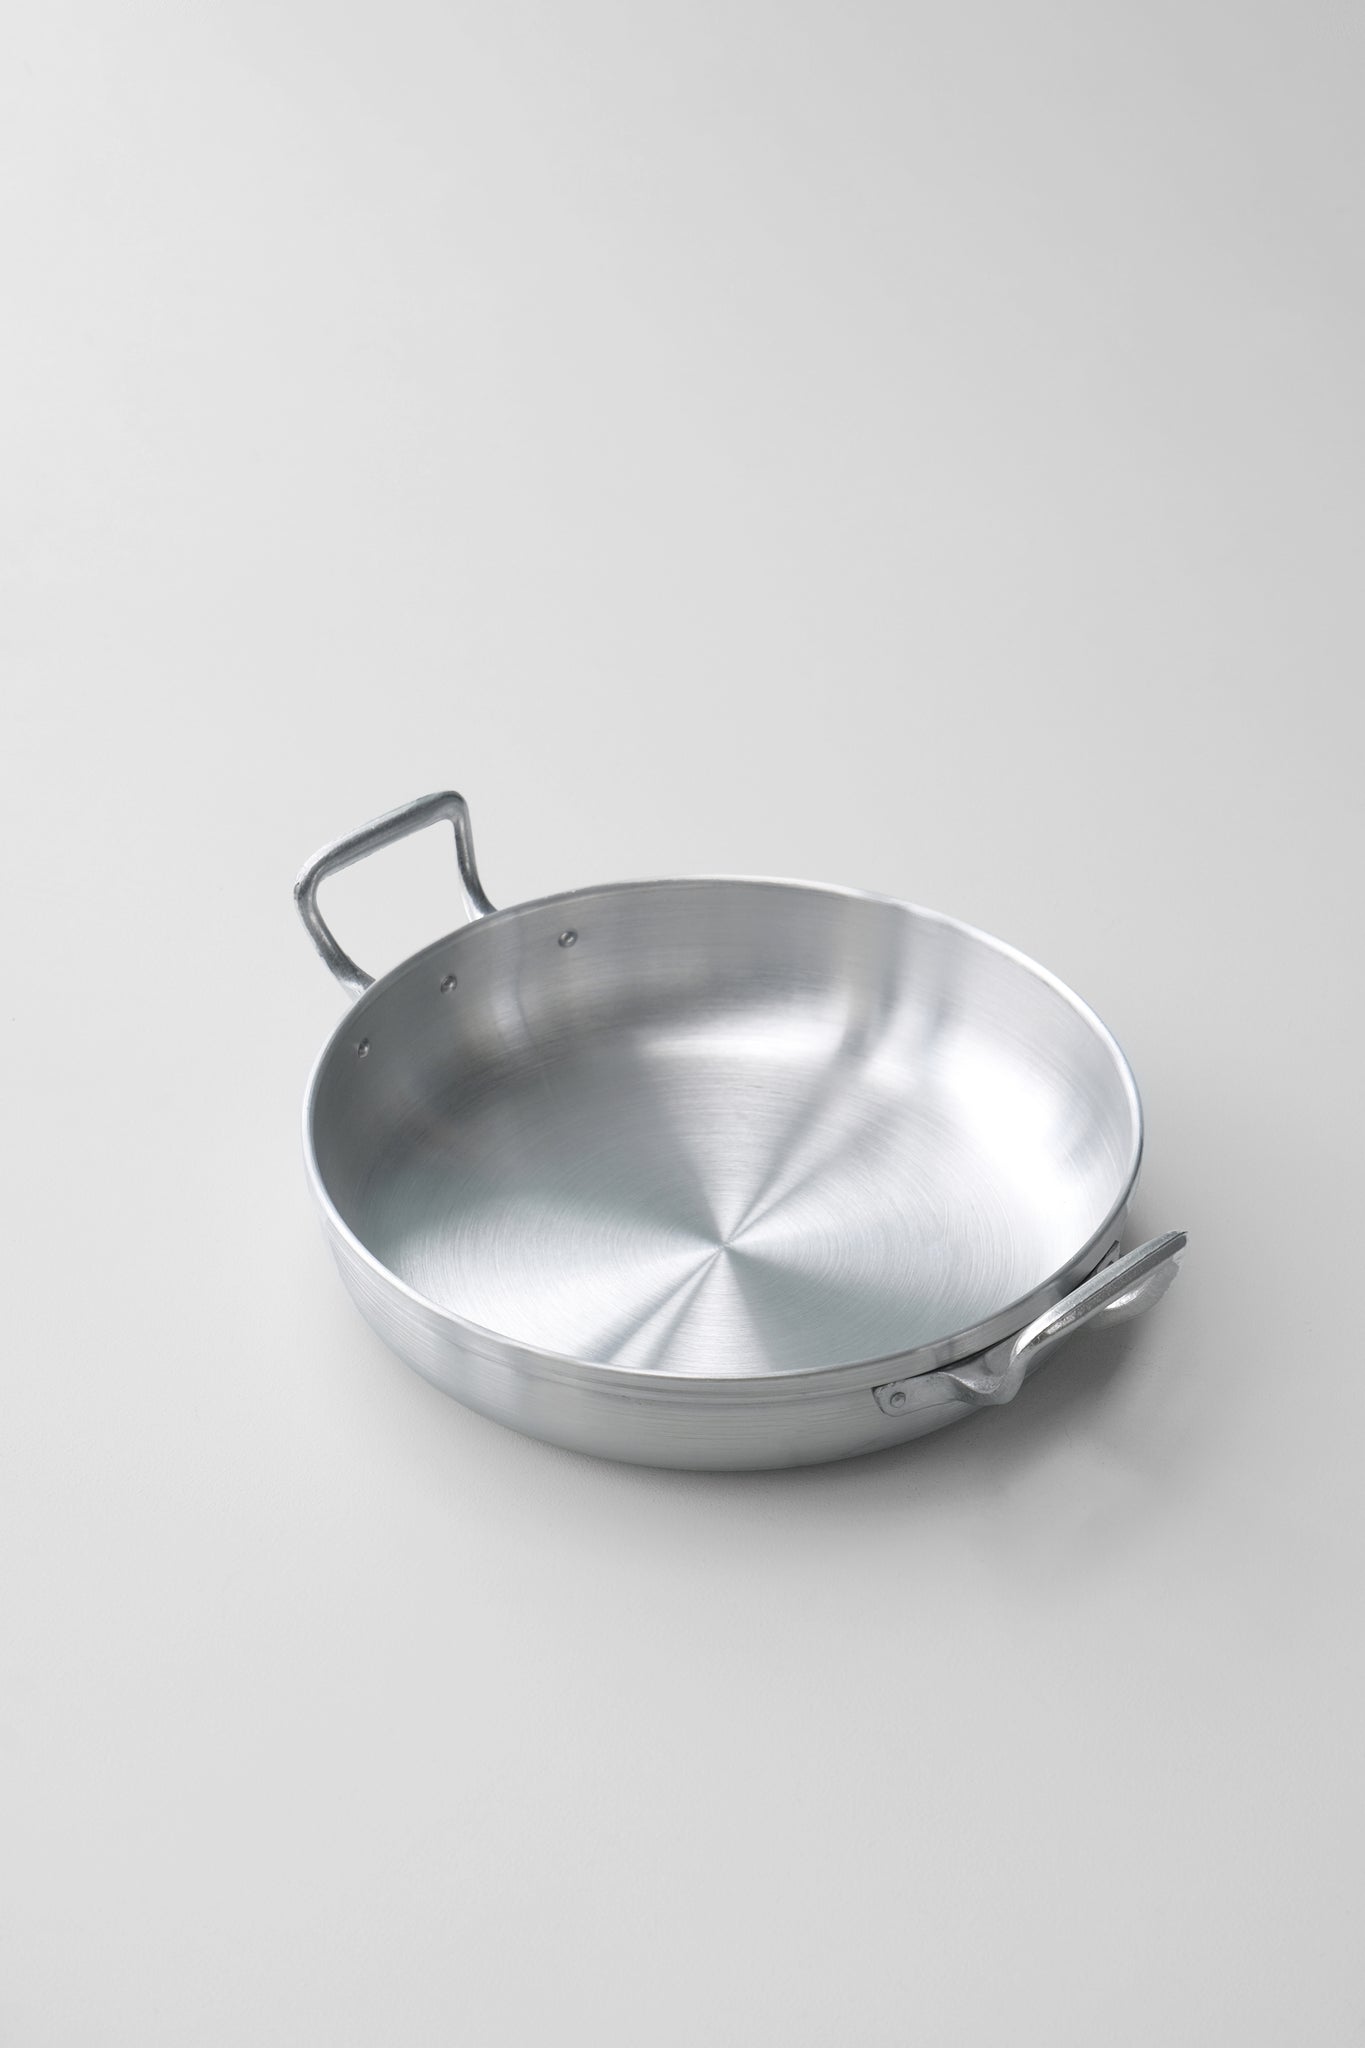 Round serving/frying pan 2 sizes-Inox-KIOSK48TH